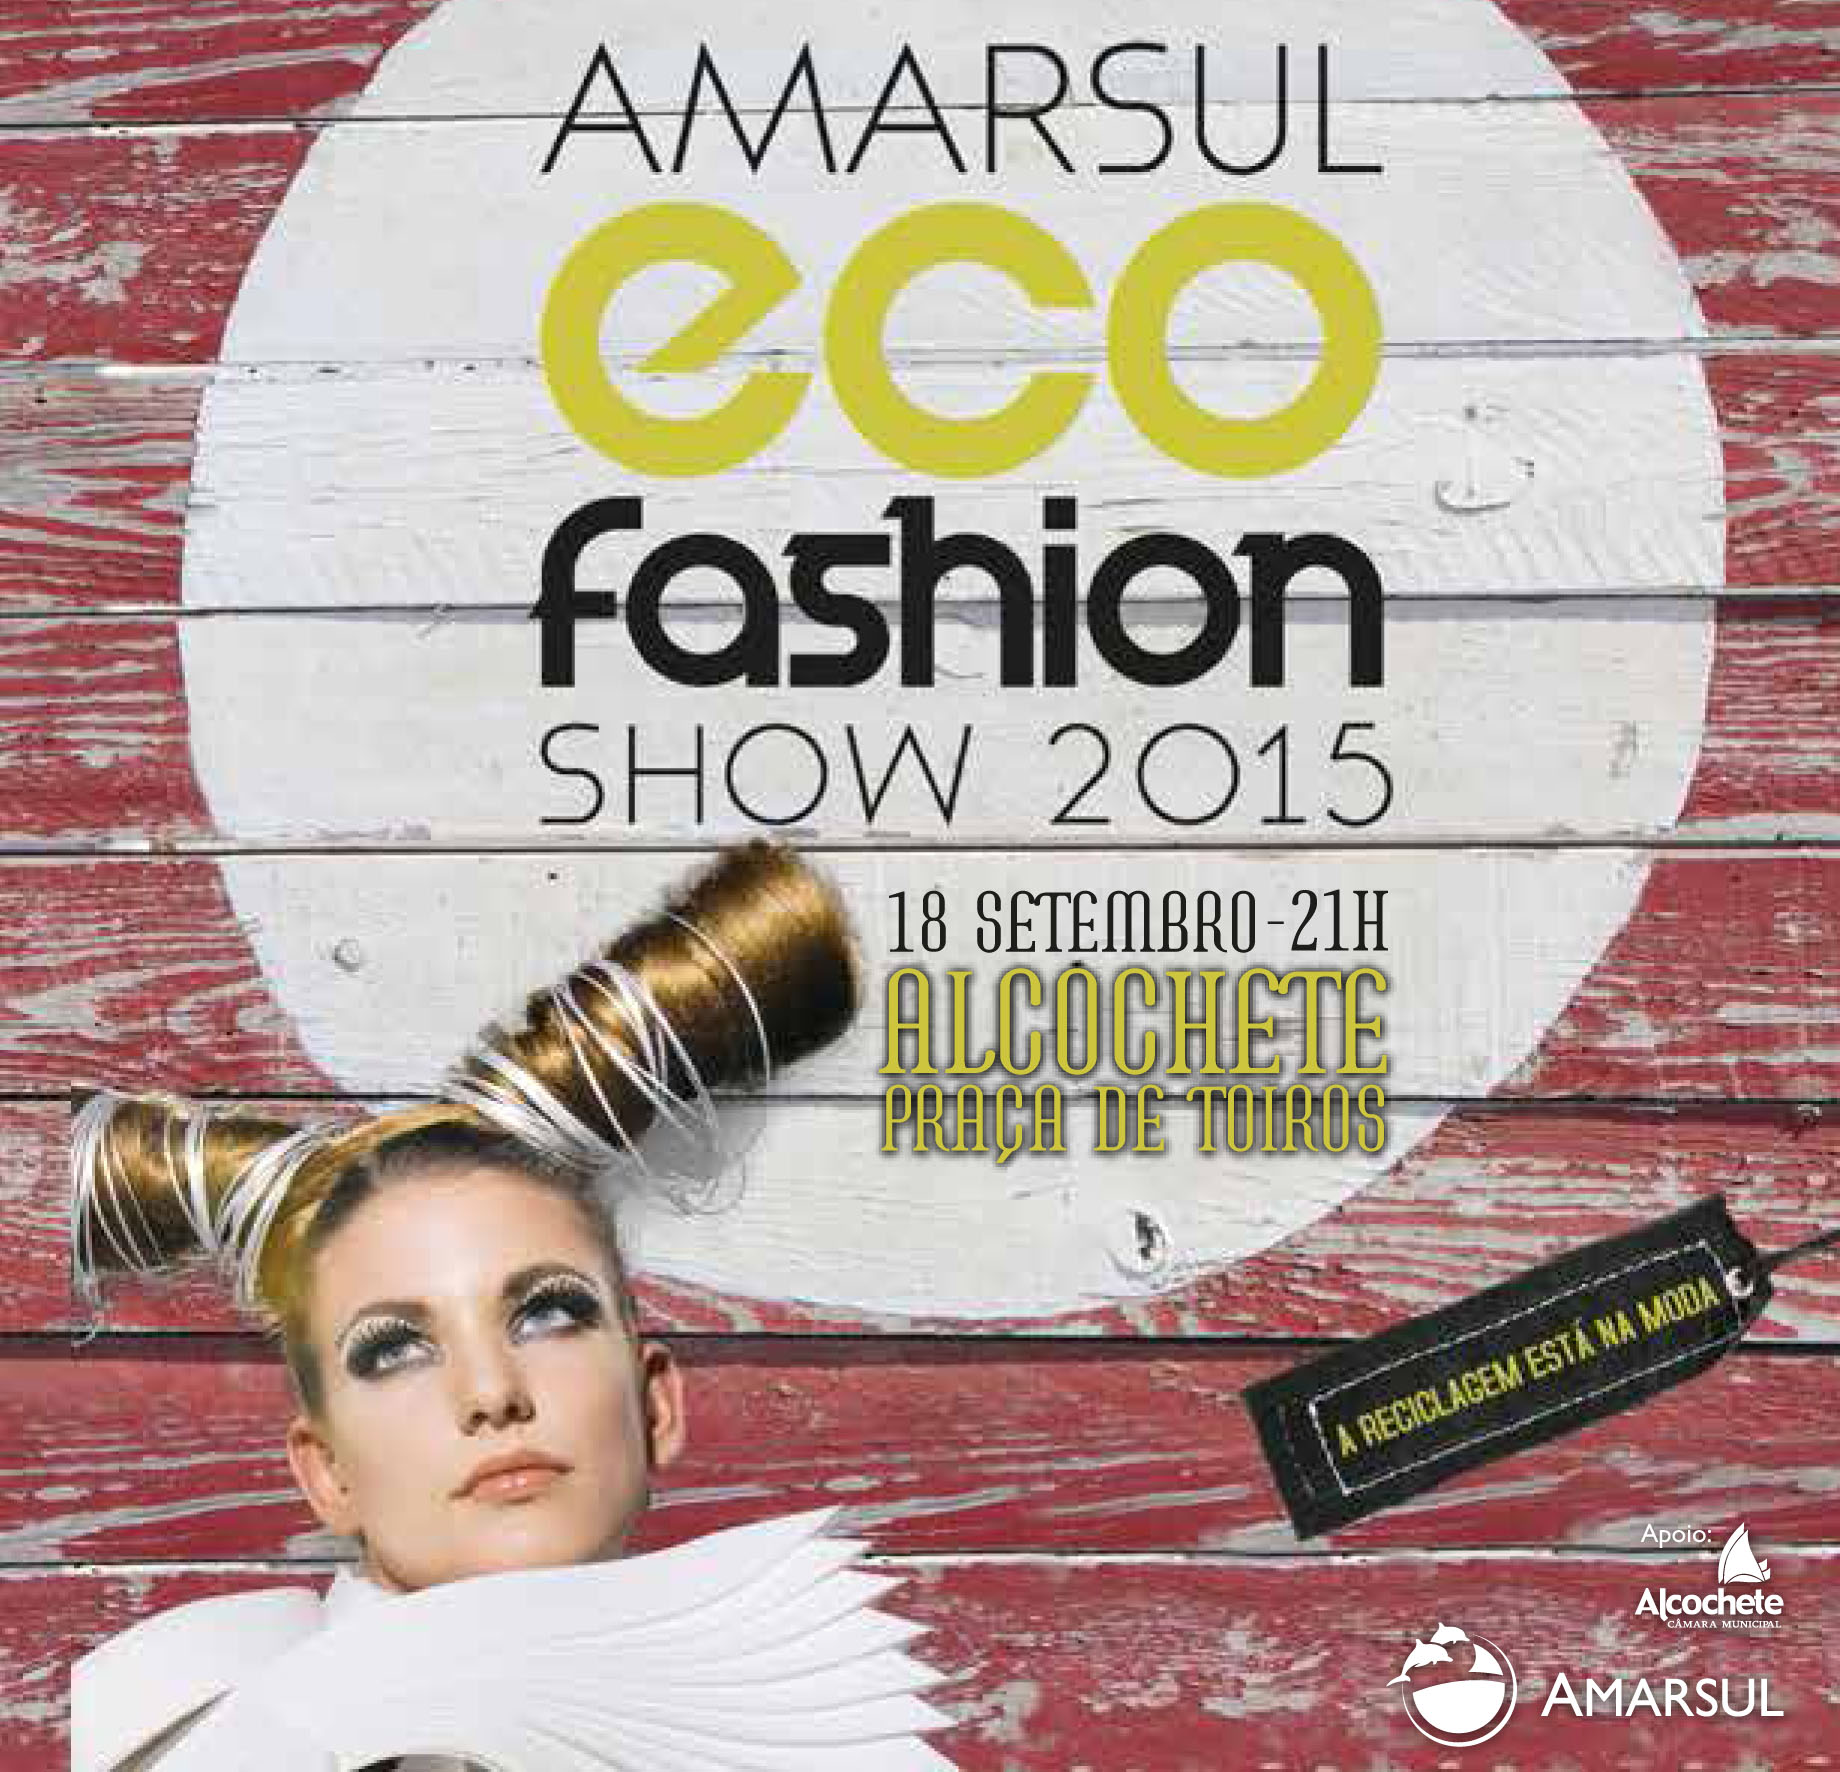 Alcochete é palco do Amarsul Eco Fashion